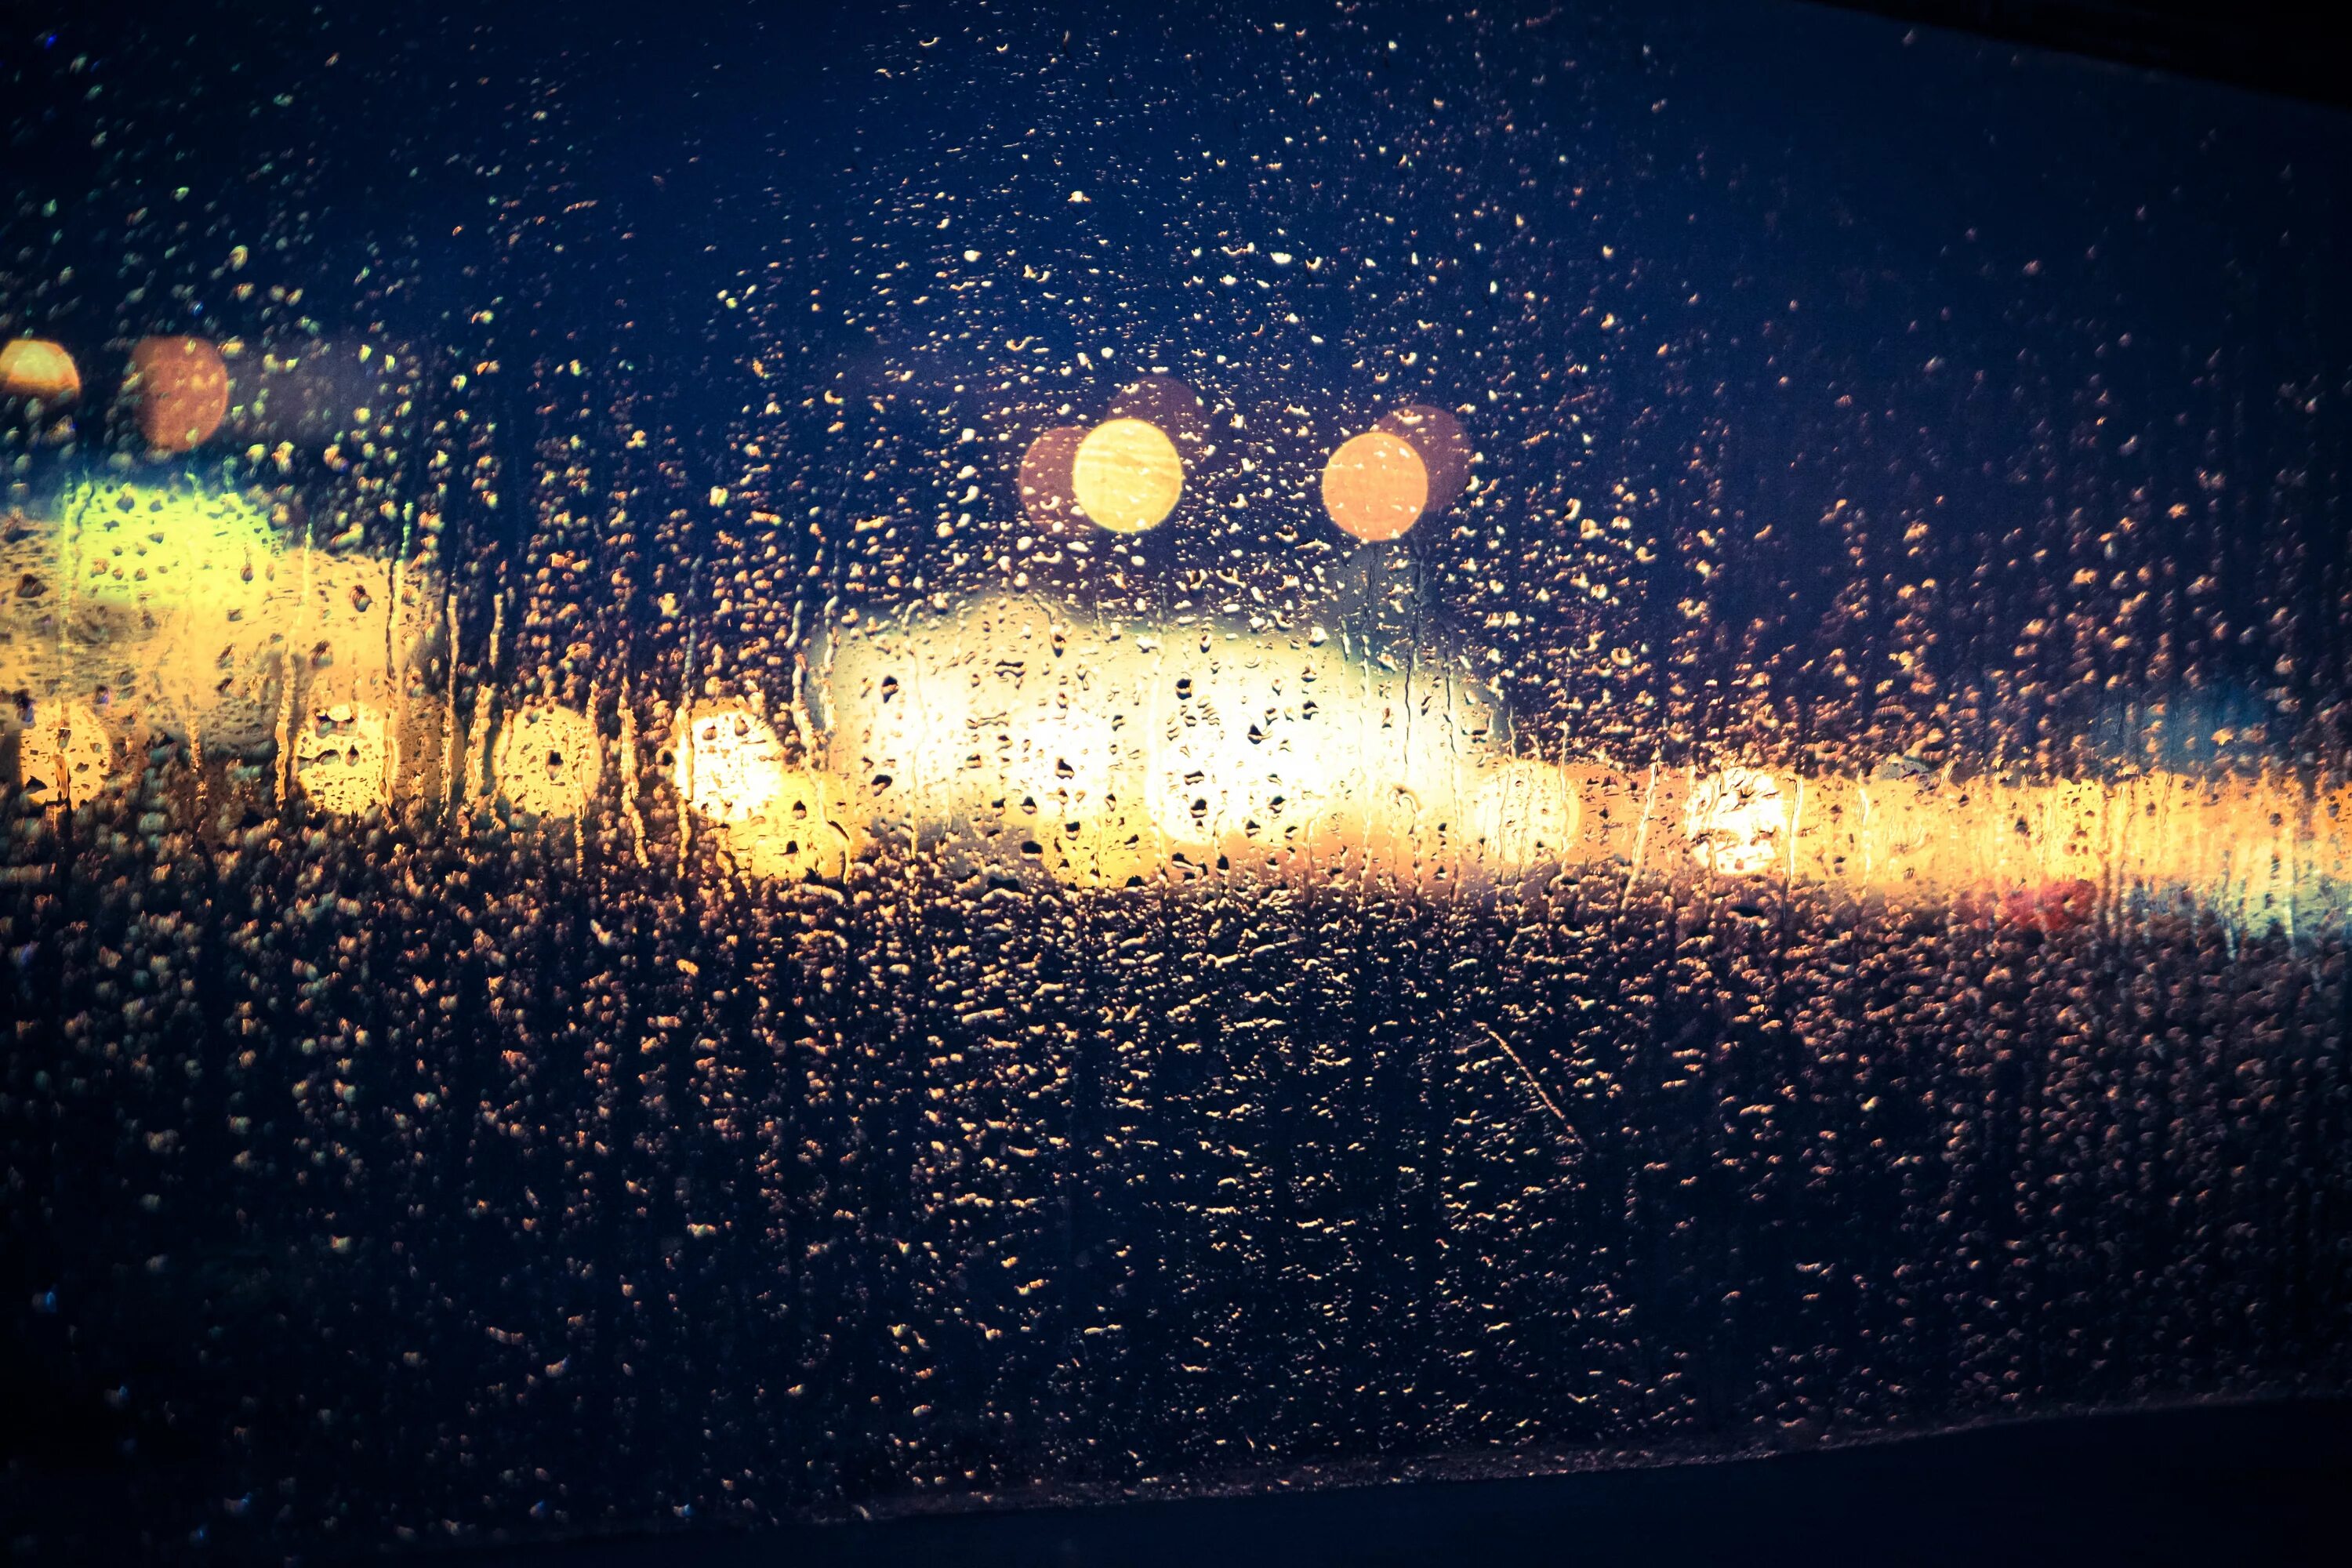 Дождь ночью. Дождь в городе ночью. Ночной город дождь. Боке. За окном дождь ночь фонари тает первый